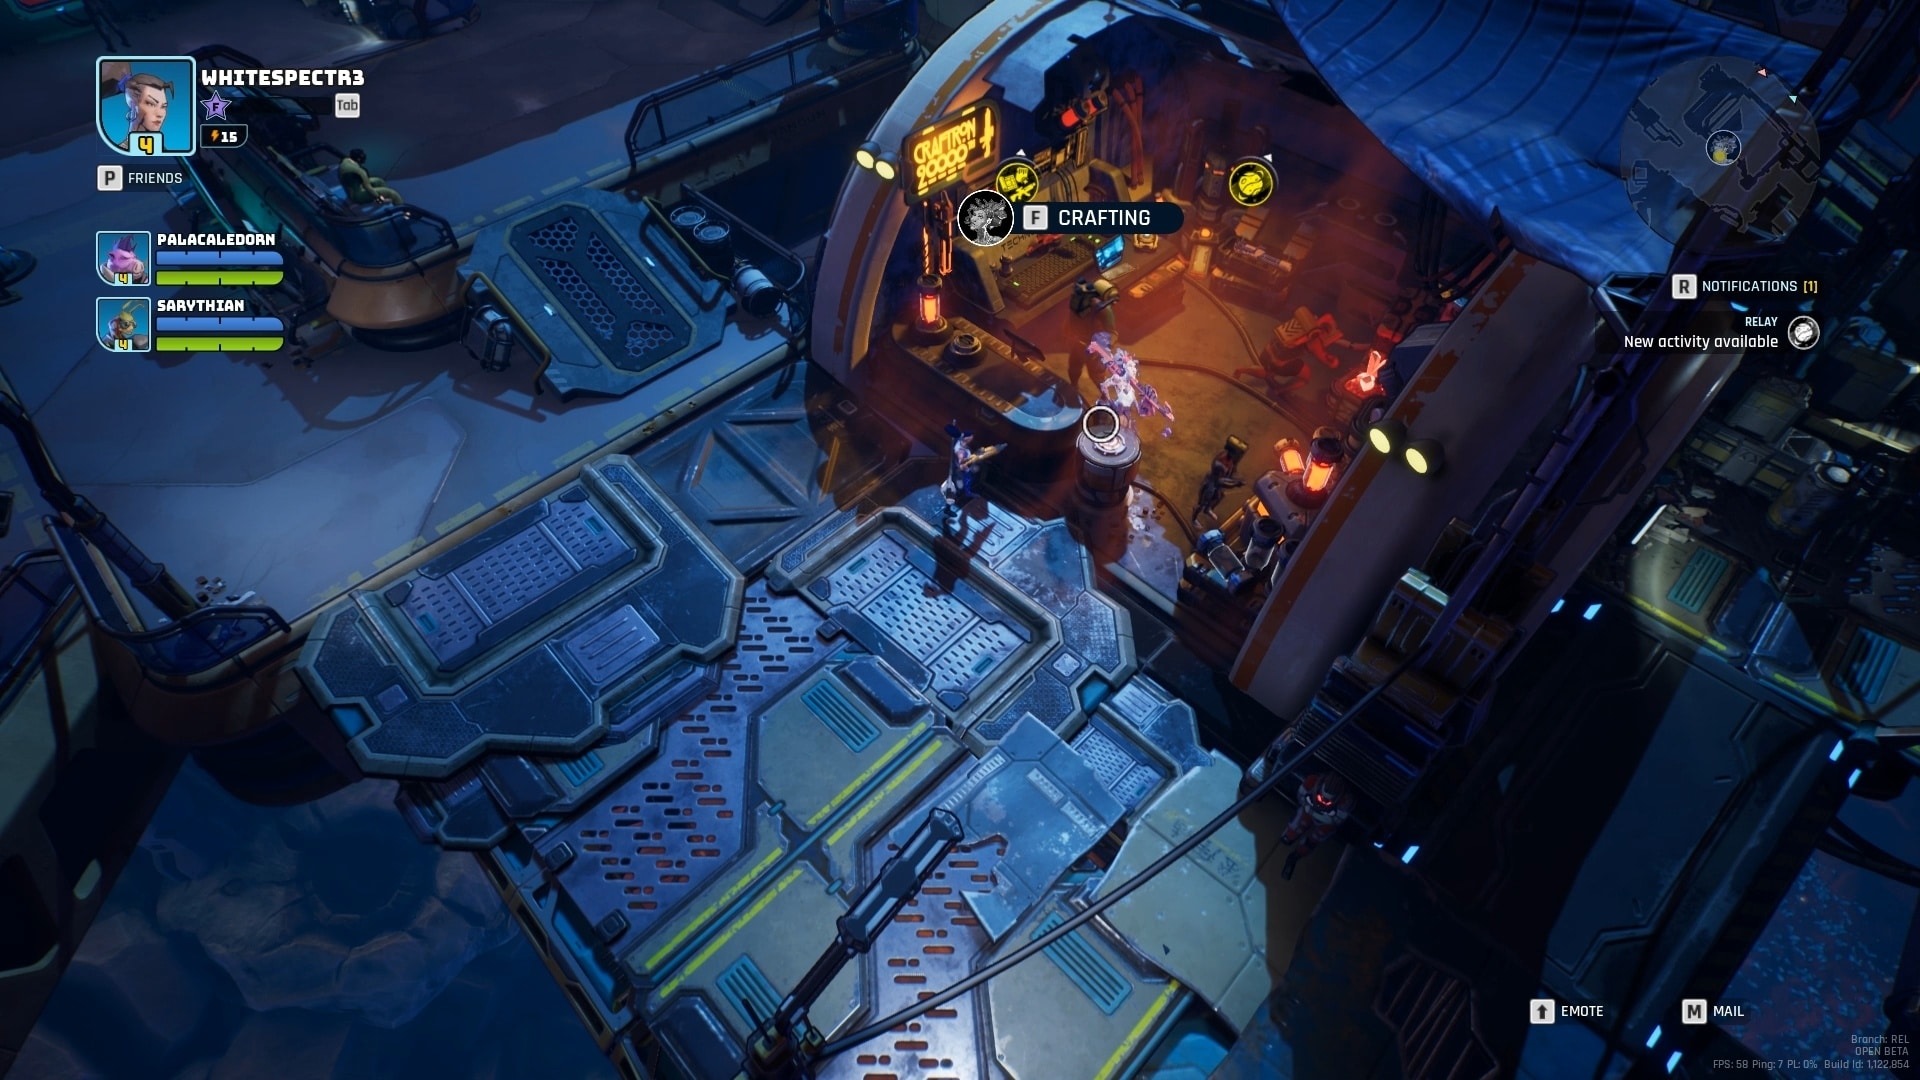 La estación espacial Gambito del Diablo ofrece la oportunidad de fabricar nuevos equipos entre misiones.